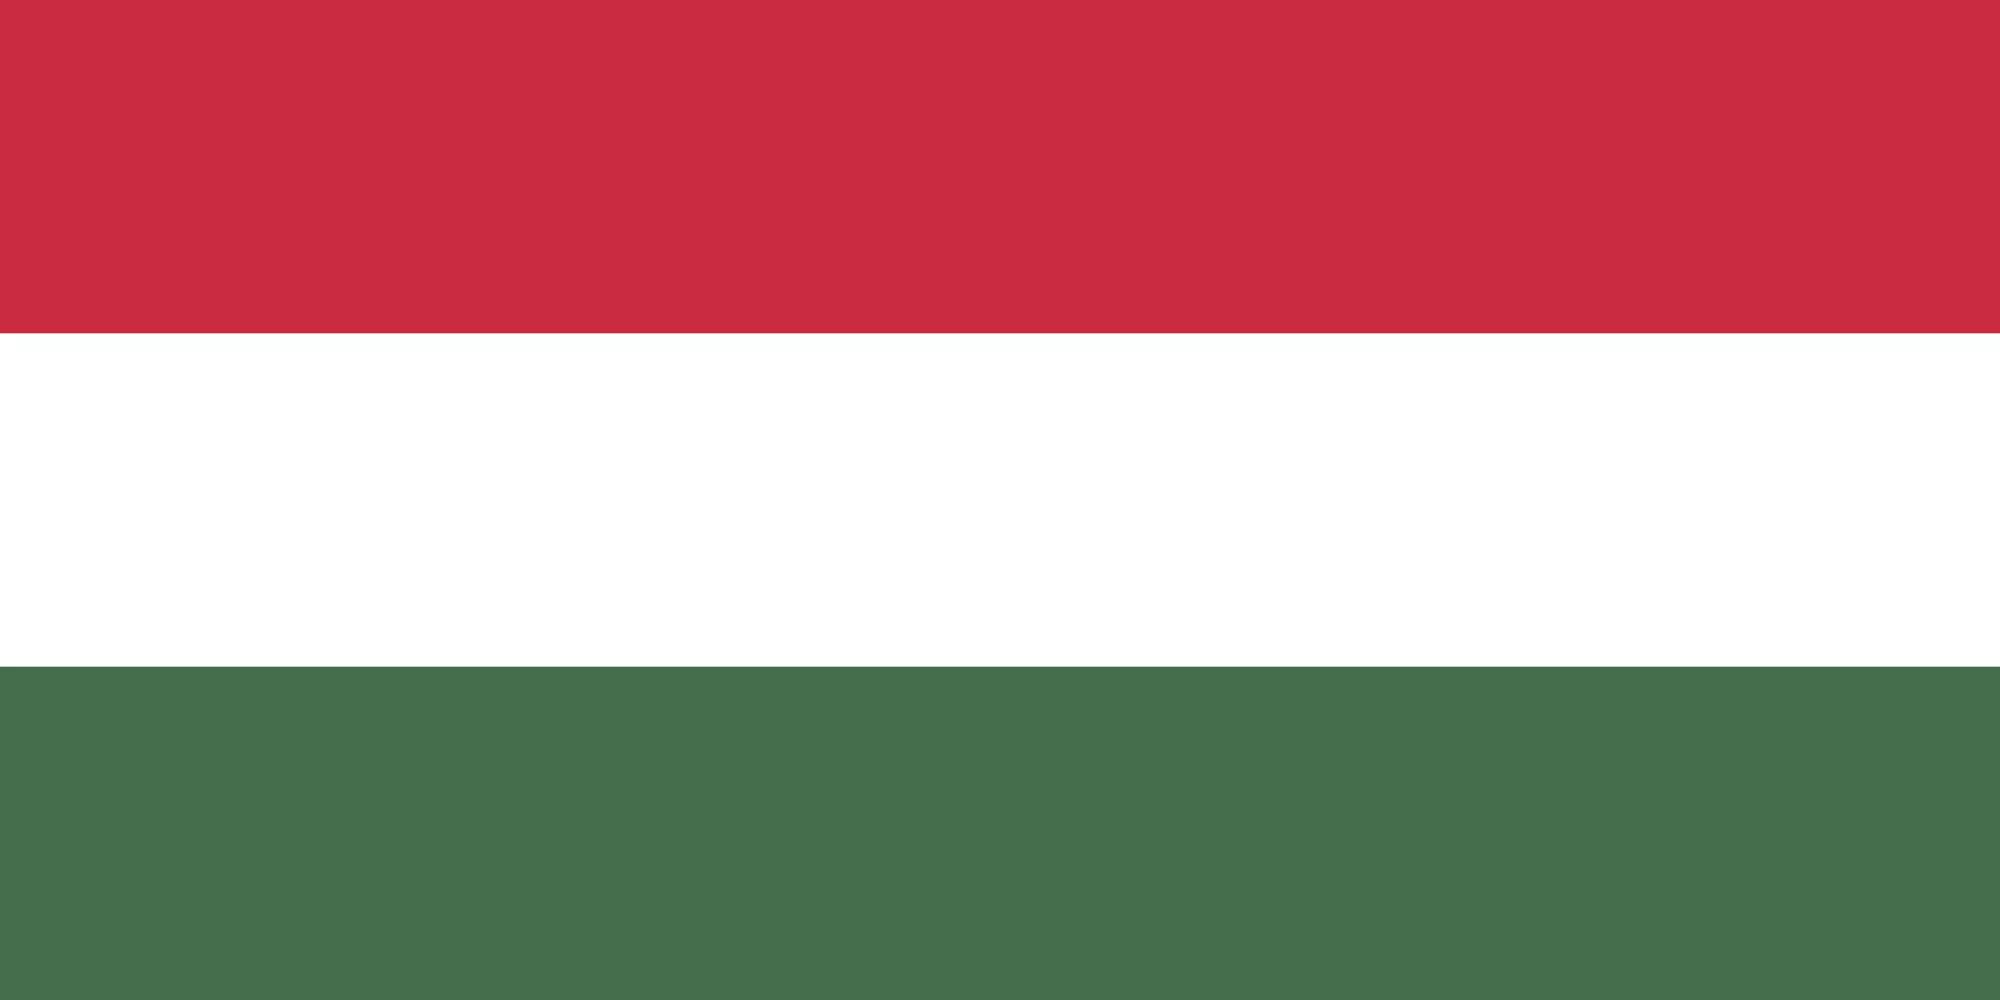 Зеленый белый зеленый флаг какой страны. Республика Венгрия флаг. Флаг малой Литвы. Флаг Литвы 1936. Флаг Венгрии 1939.